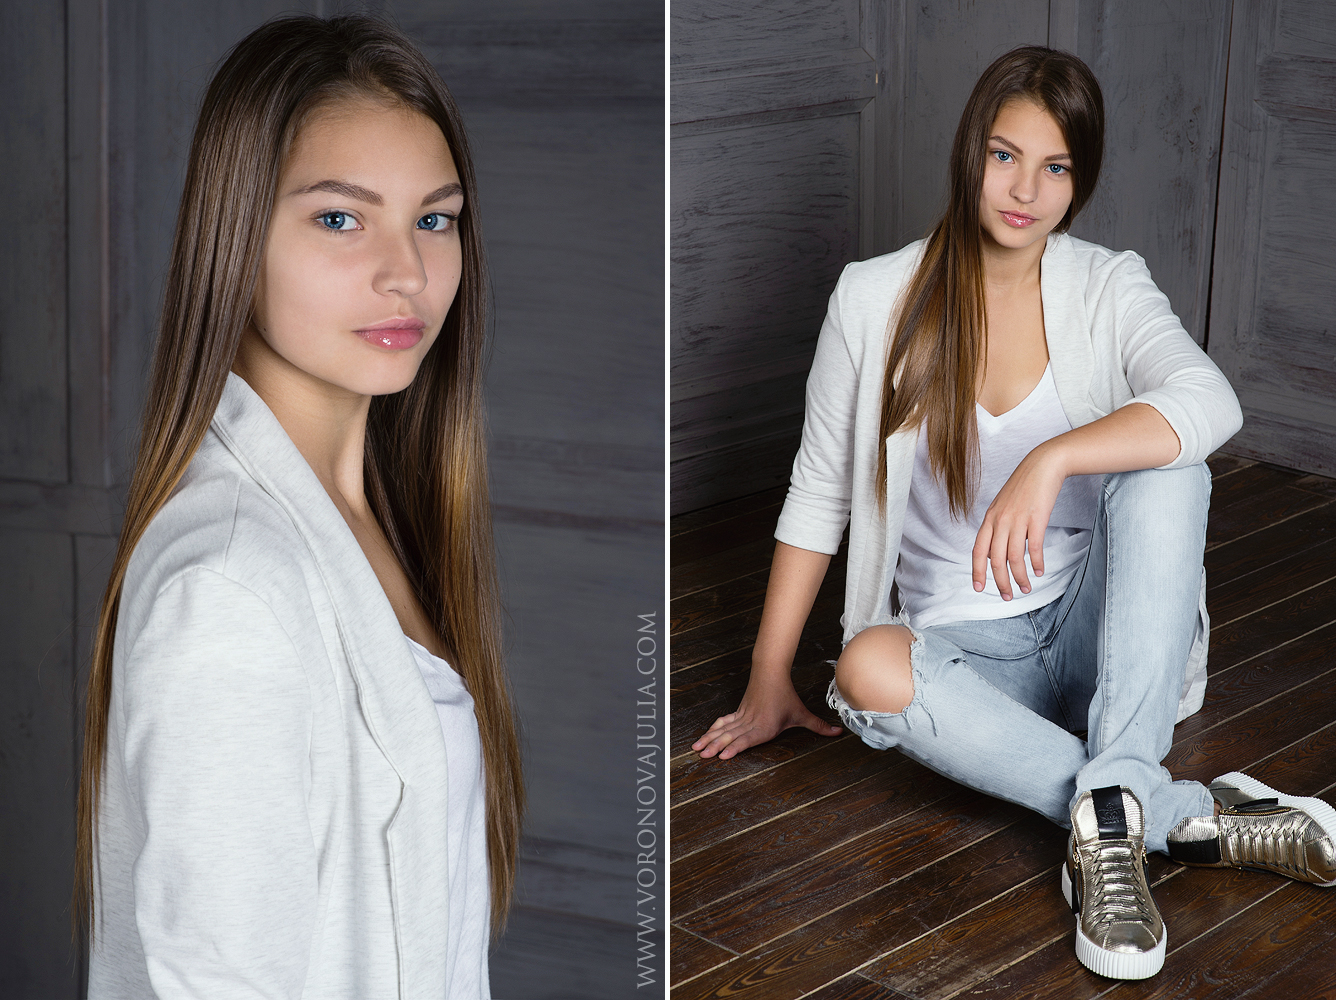 Софья Ланшакова - аккредитованная модель для участия в подиумных показах на Междунродной Детской Неделе моды